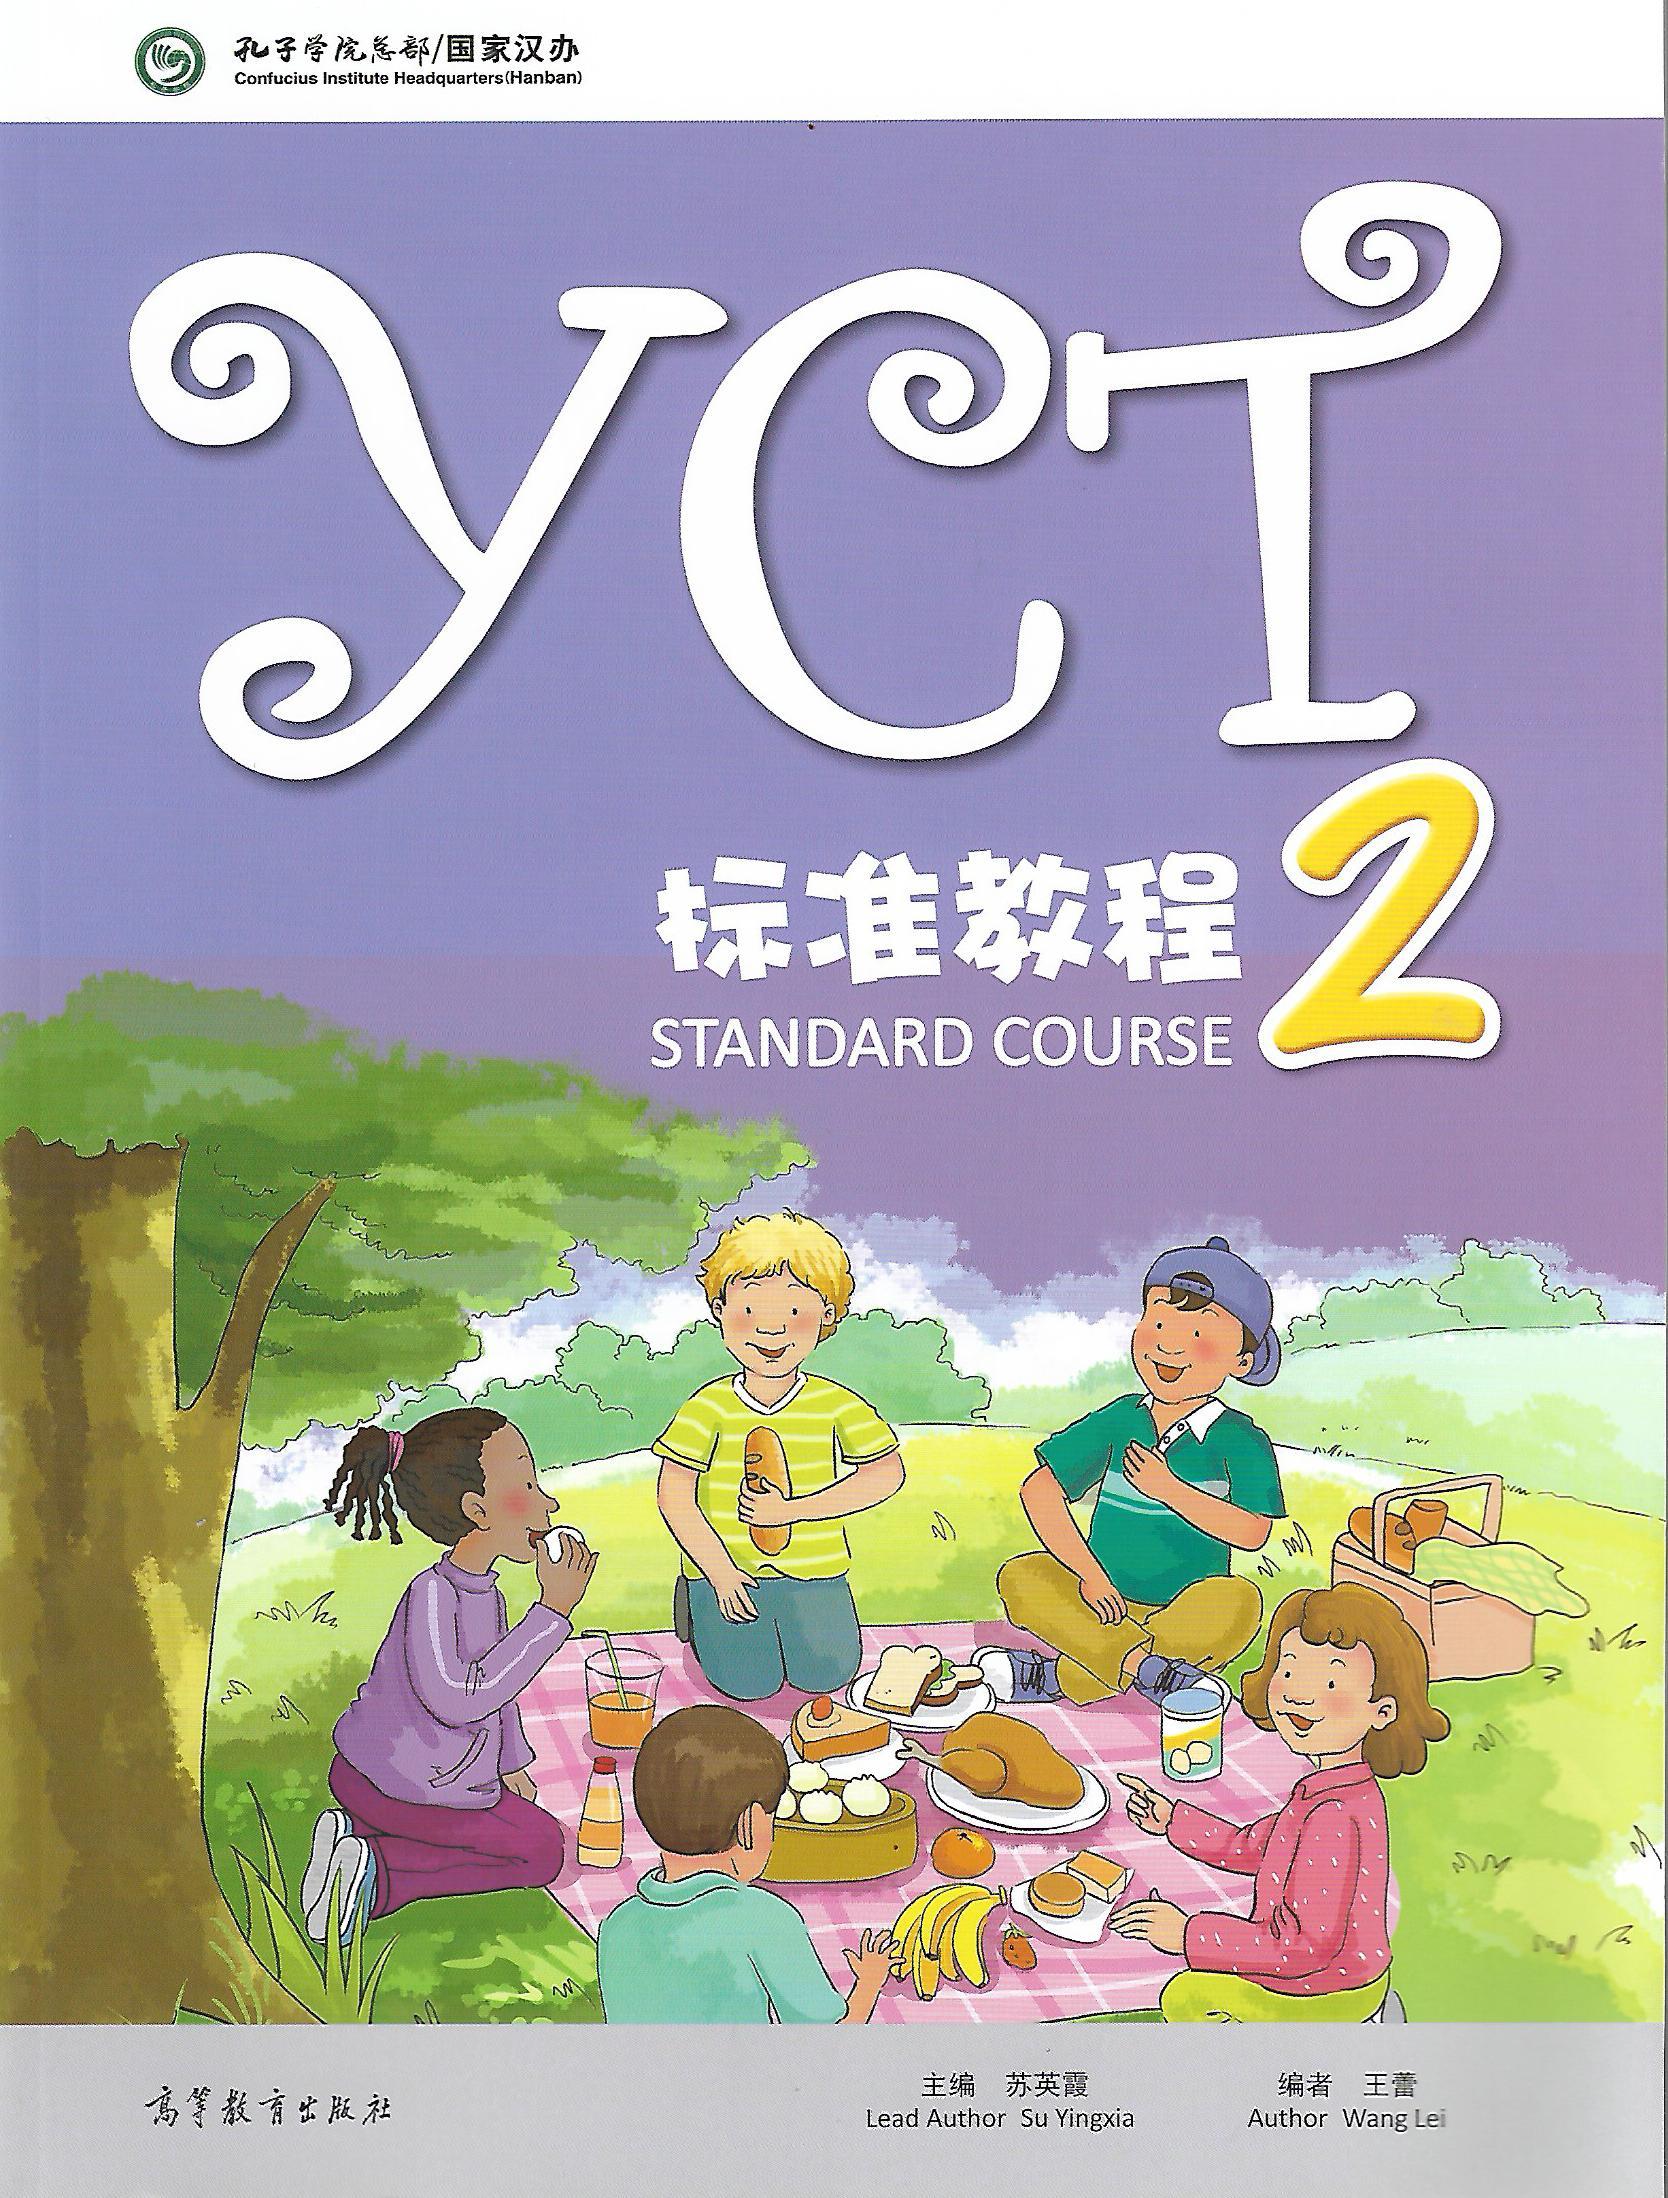 แบบเรียน YCT STANDARD COUSE 2 / YCT 标准教程 2